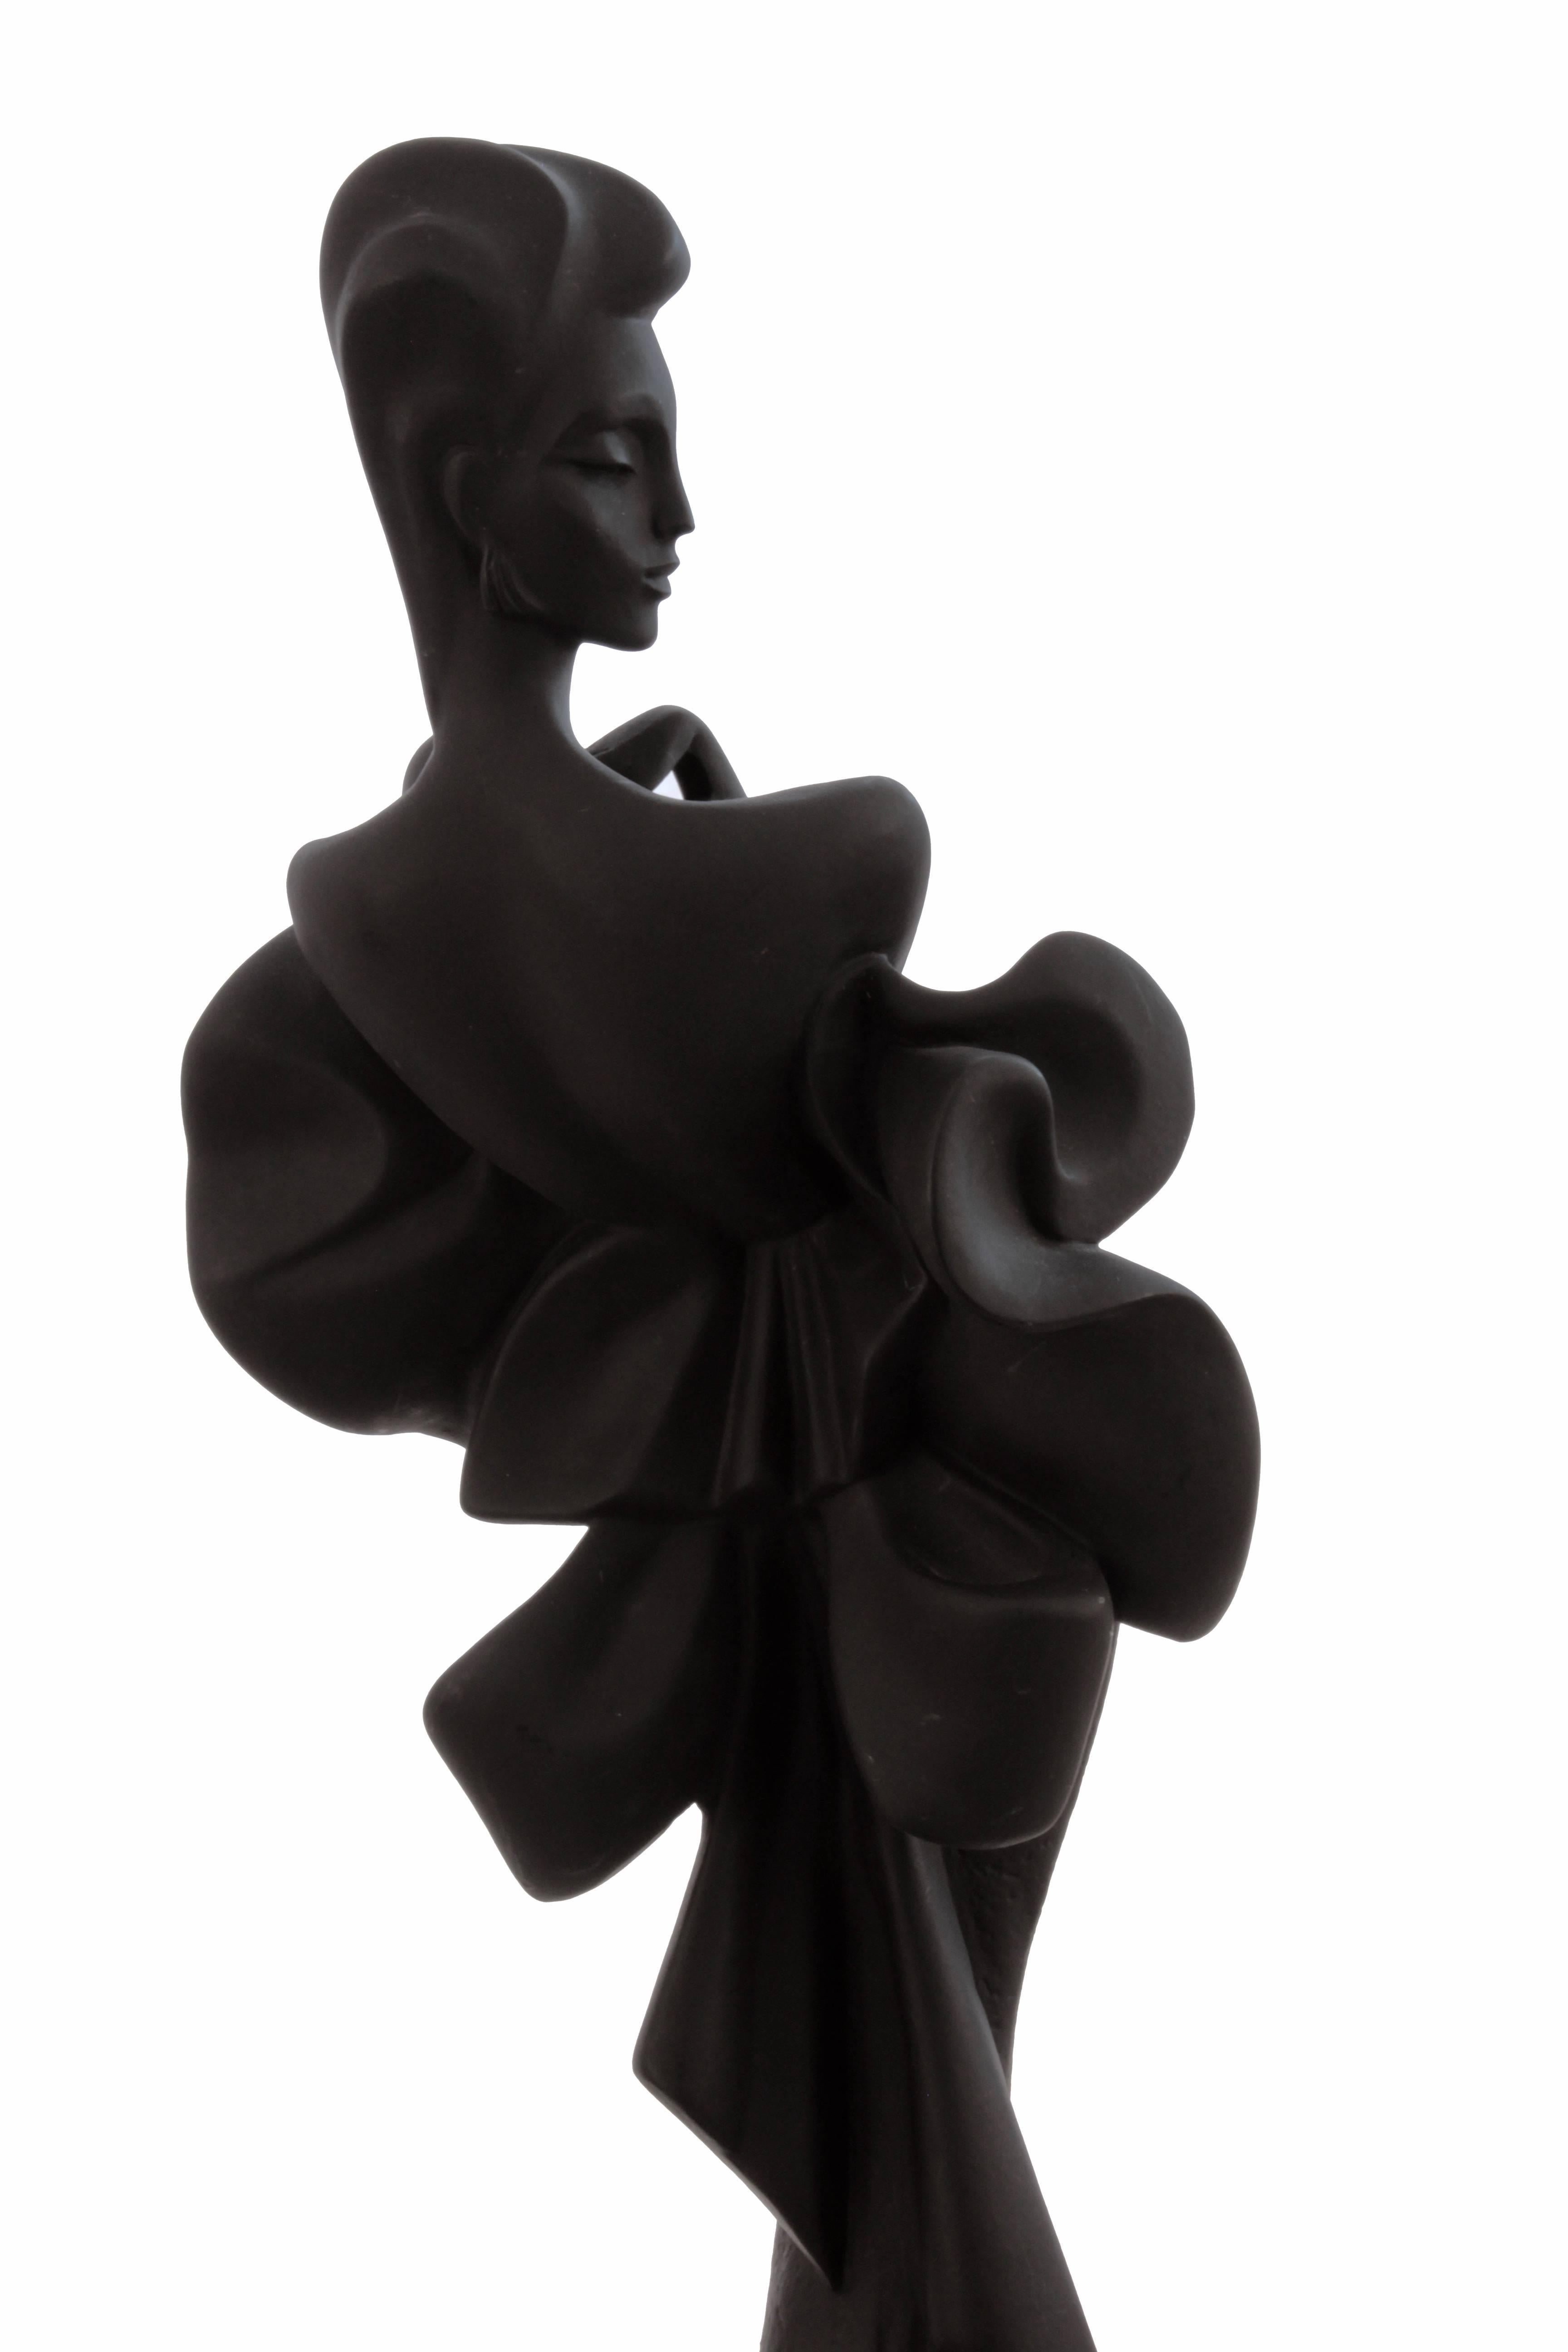 Alexsander Danel Austin Productions Inc Orchide Sculpture AP3590 Fashionista 90s For Sale 4